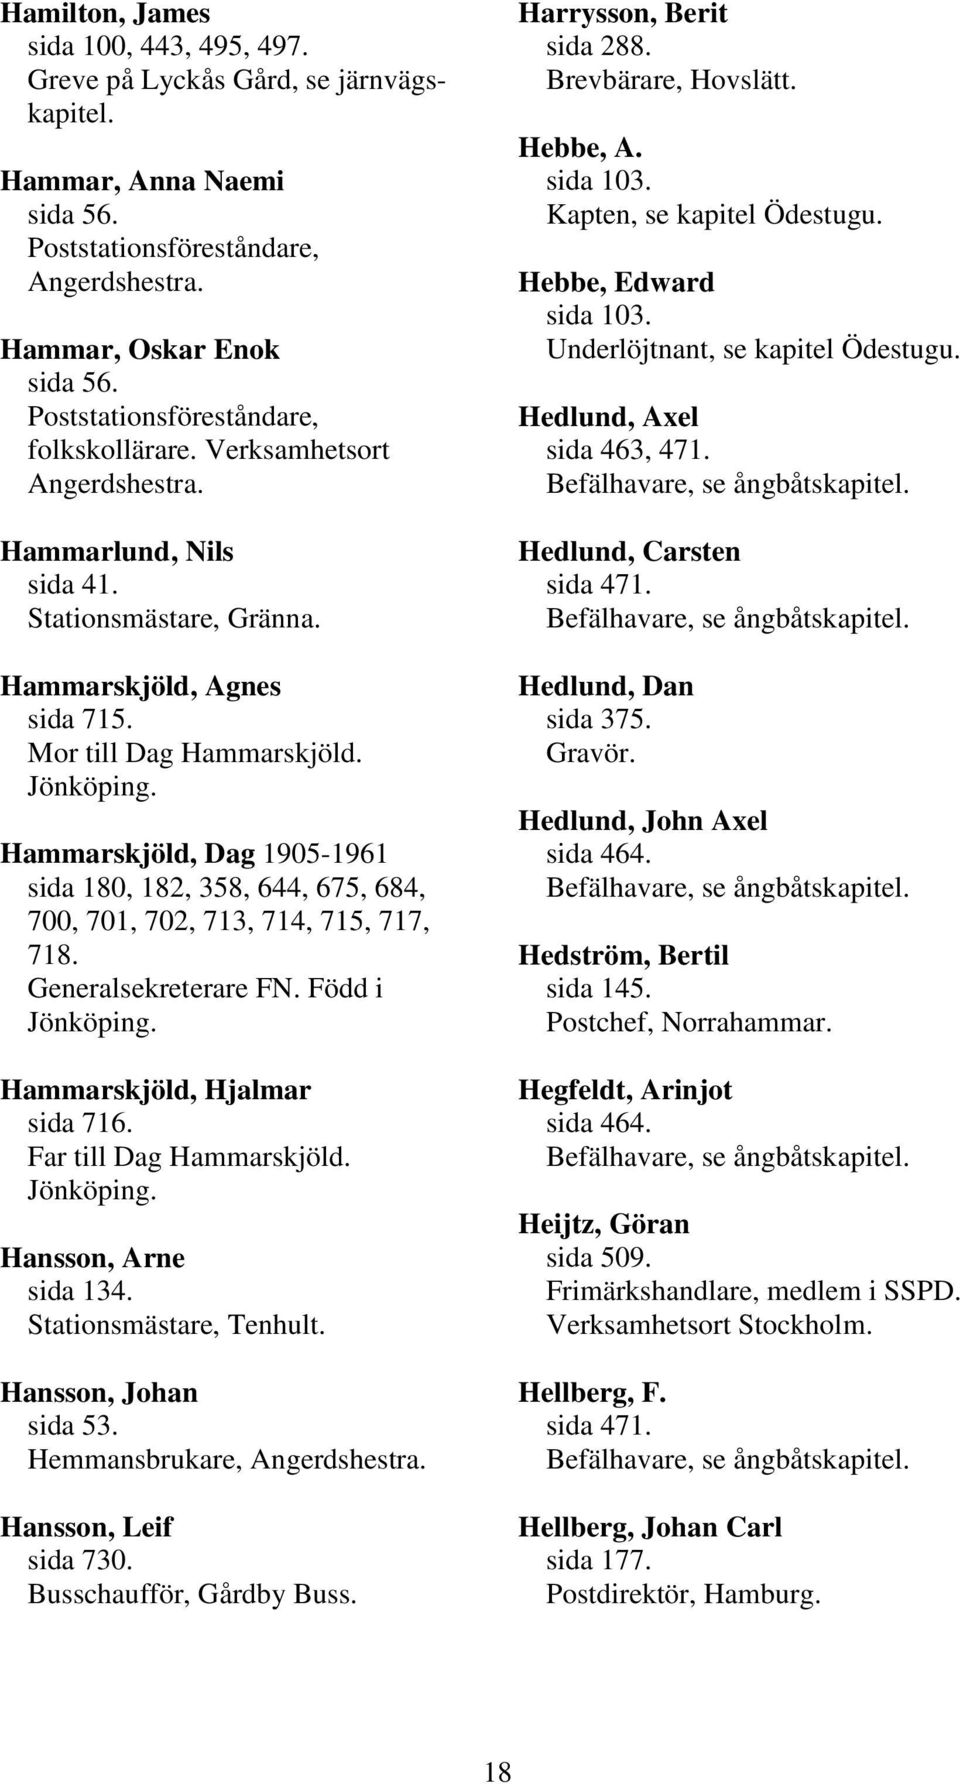 Hammarskjöld, Dag 1905-1961 sida 180, 182, 358, 644, 675, 684, 700, 701, 702, 713, 714, 715, 717, 718. Generalsekreterare FN. Född i Hammarskjöld, Hjalmar sida 716. Far till Dag Hammarskjöld.